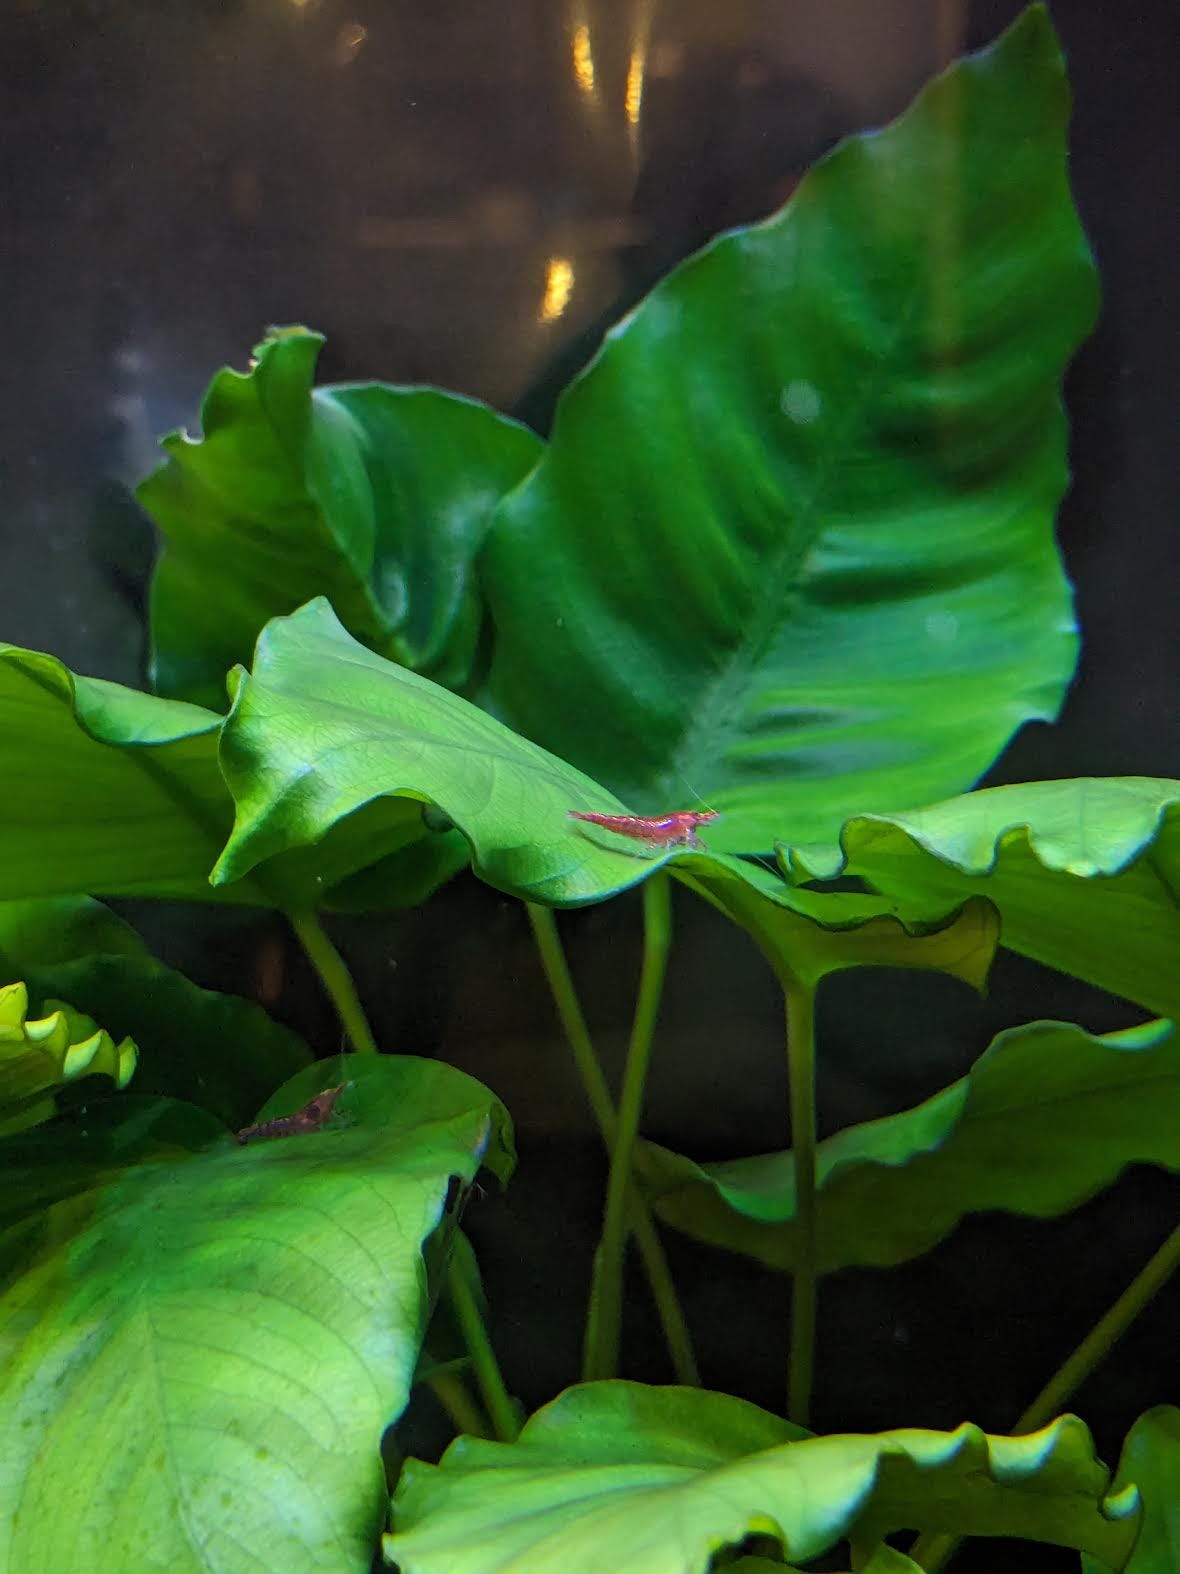 A couple shrimp on a leaf.